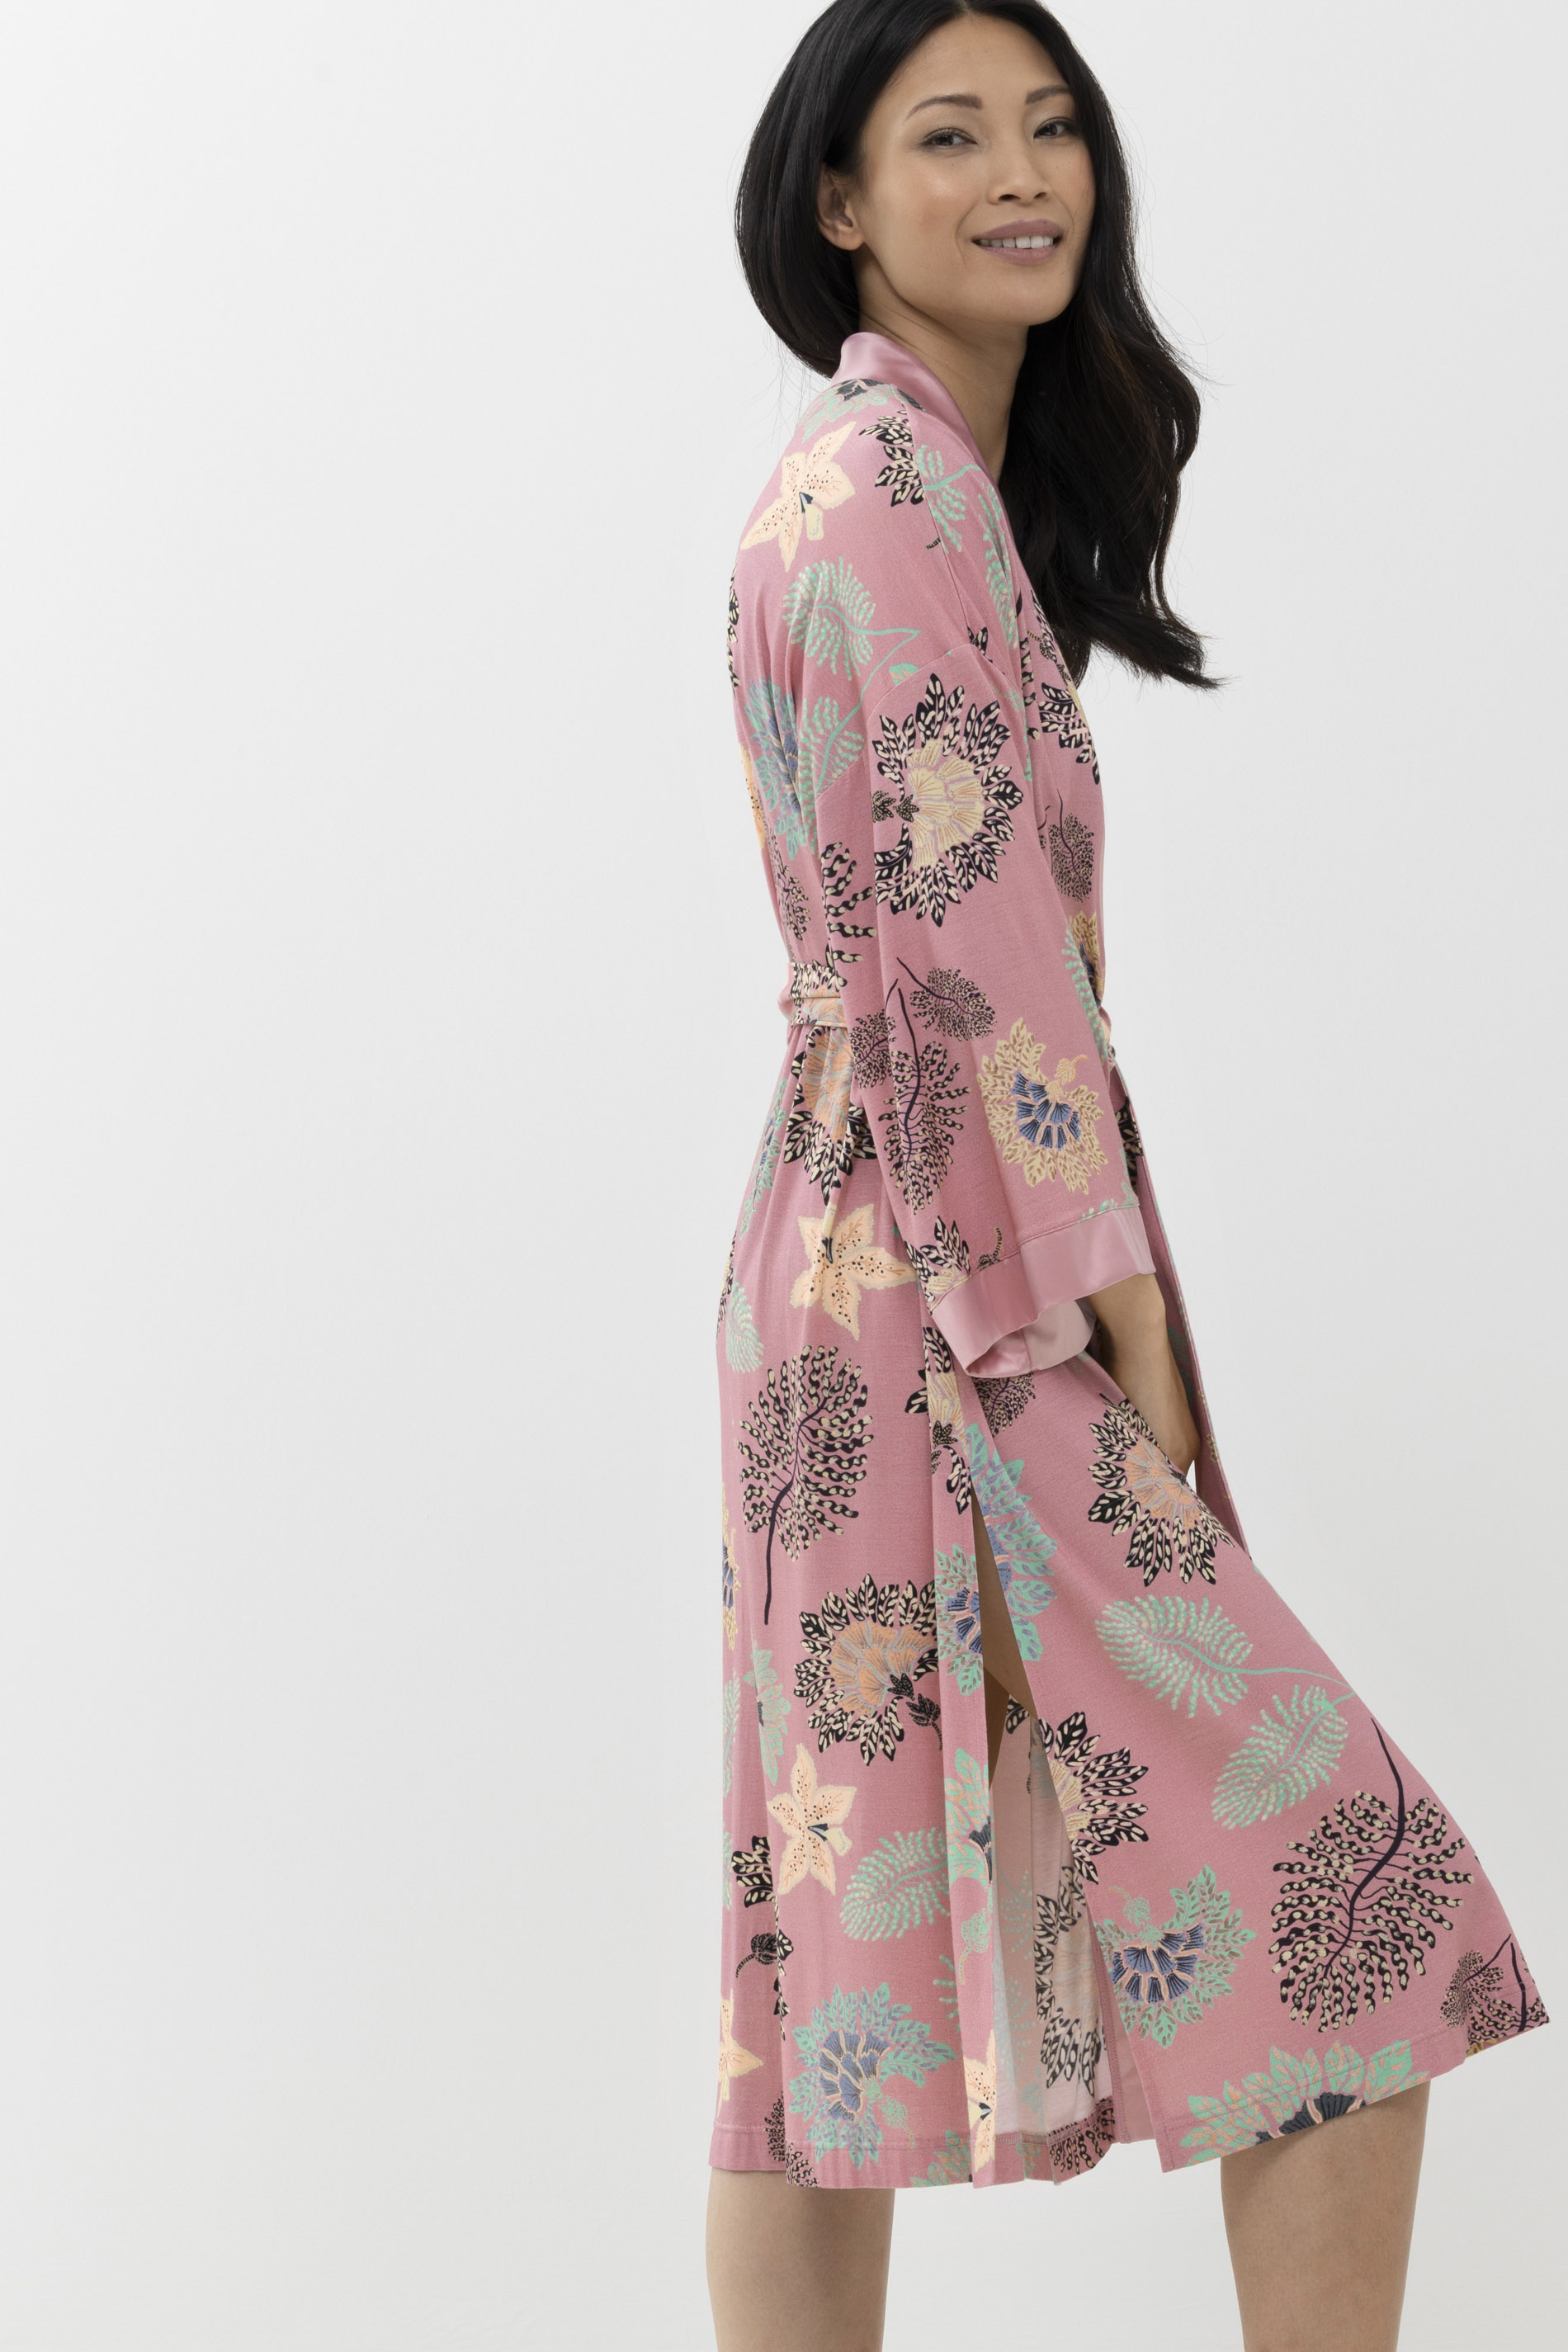 Kimono Serie Alaina Detailansicht 02 | mey®